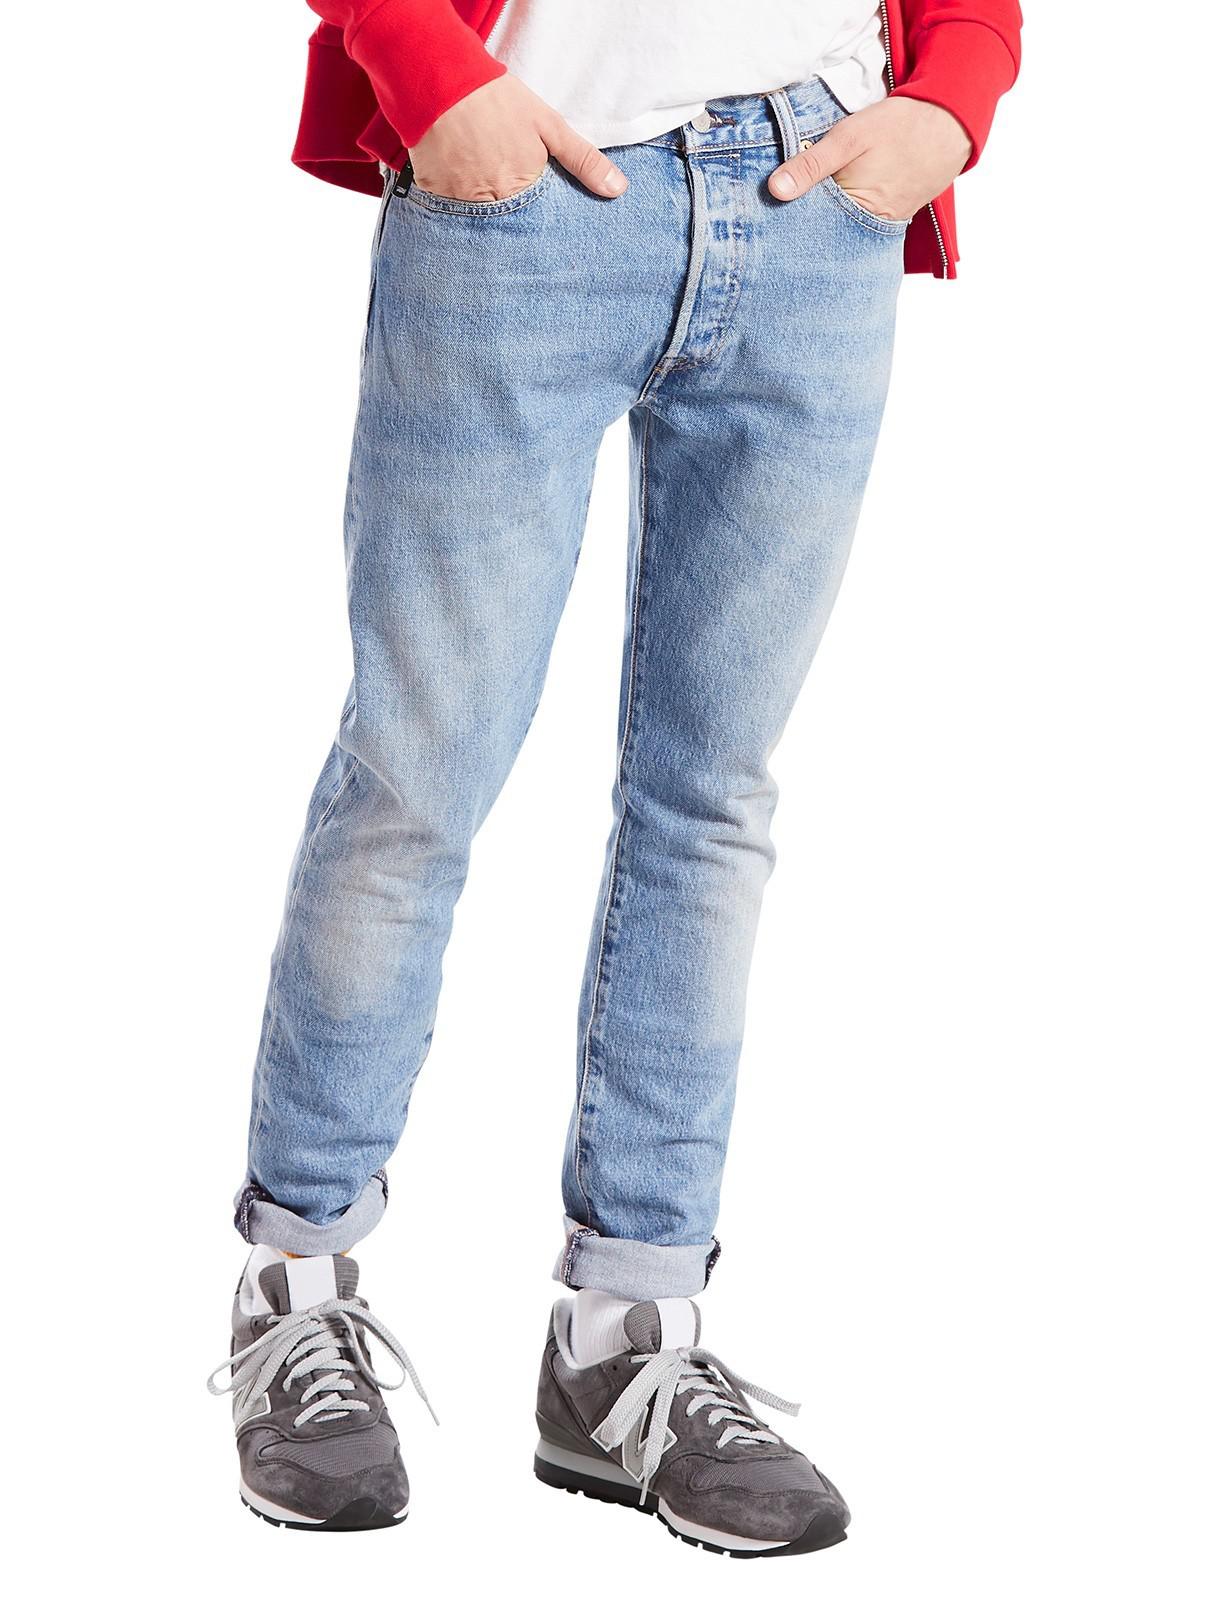 Denim West Coast 501 Skinny Jeans 